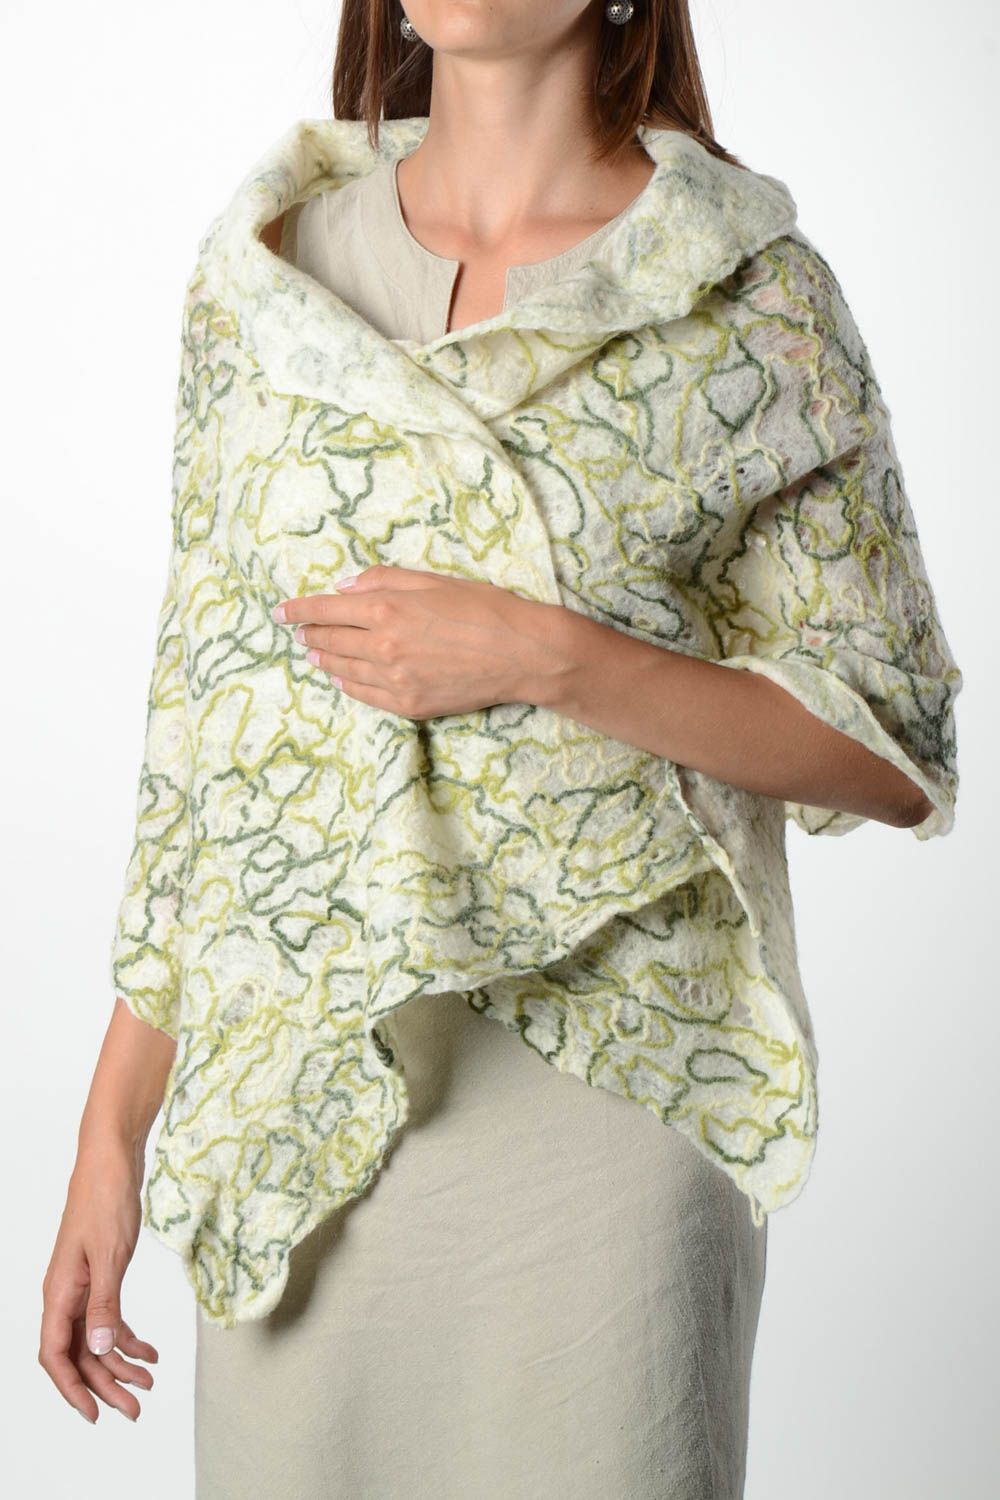 Female ornamental wool scarf unique designer accessory unusual present for girl photo 1